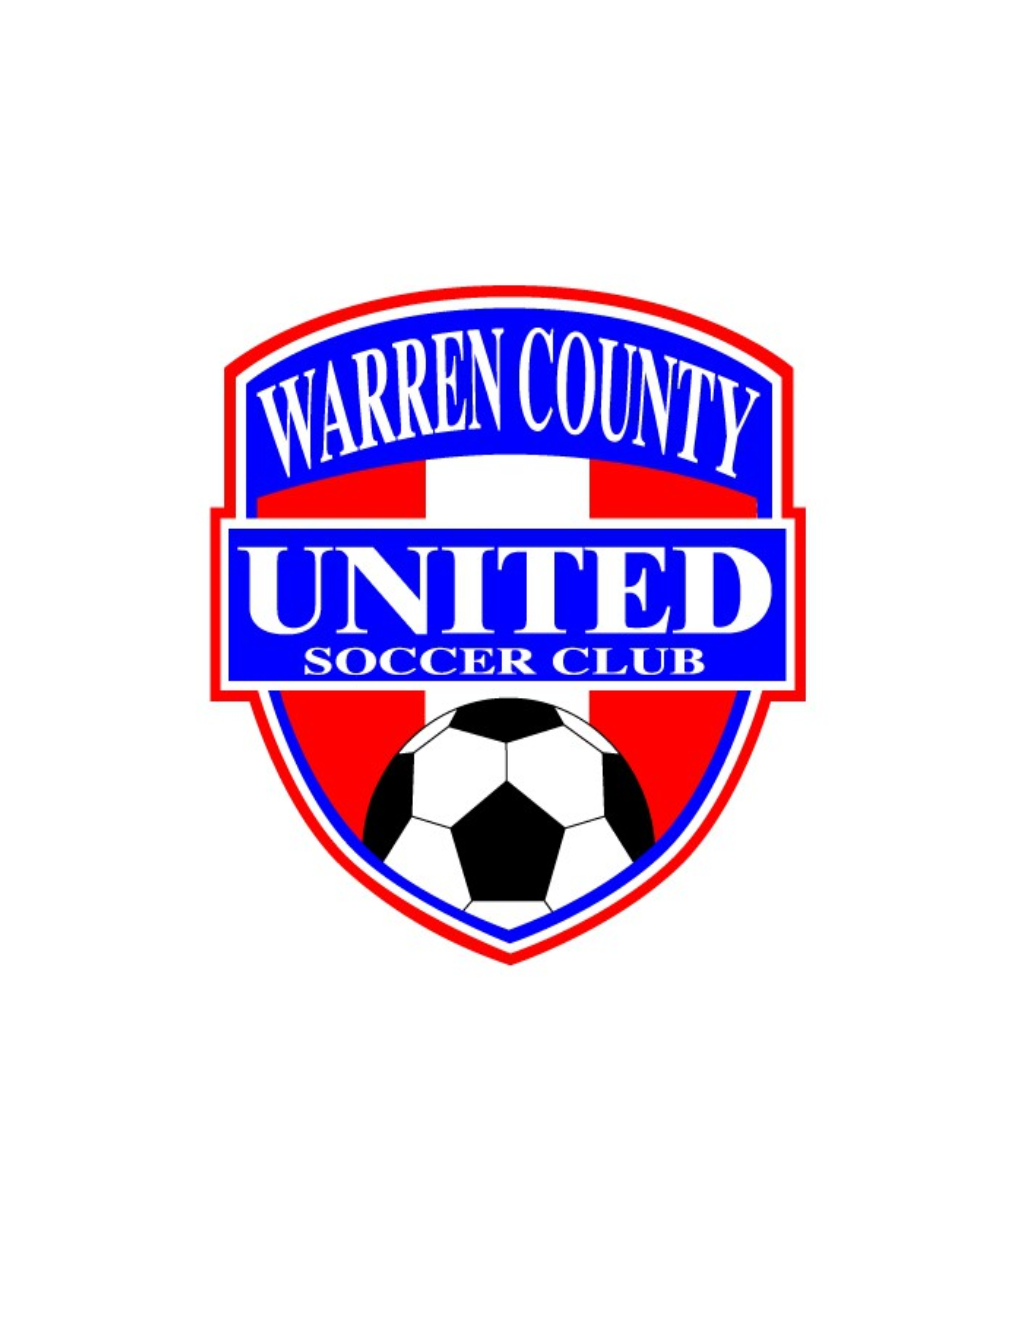 Warren County United Soccer